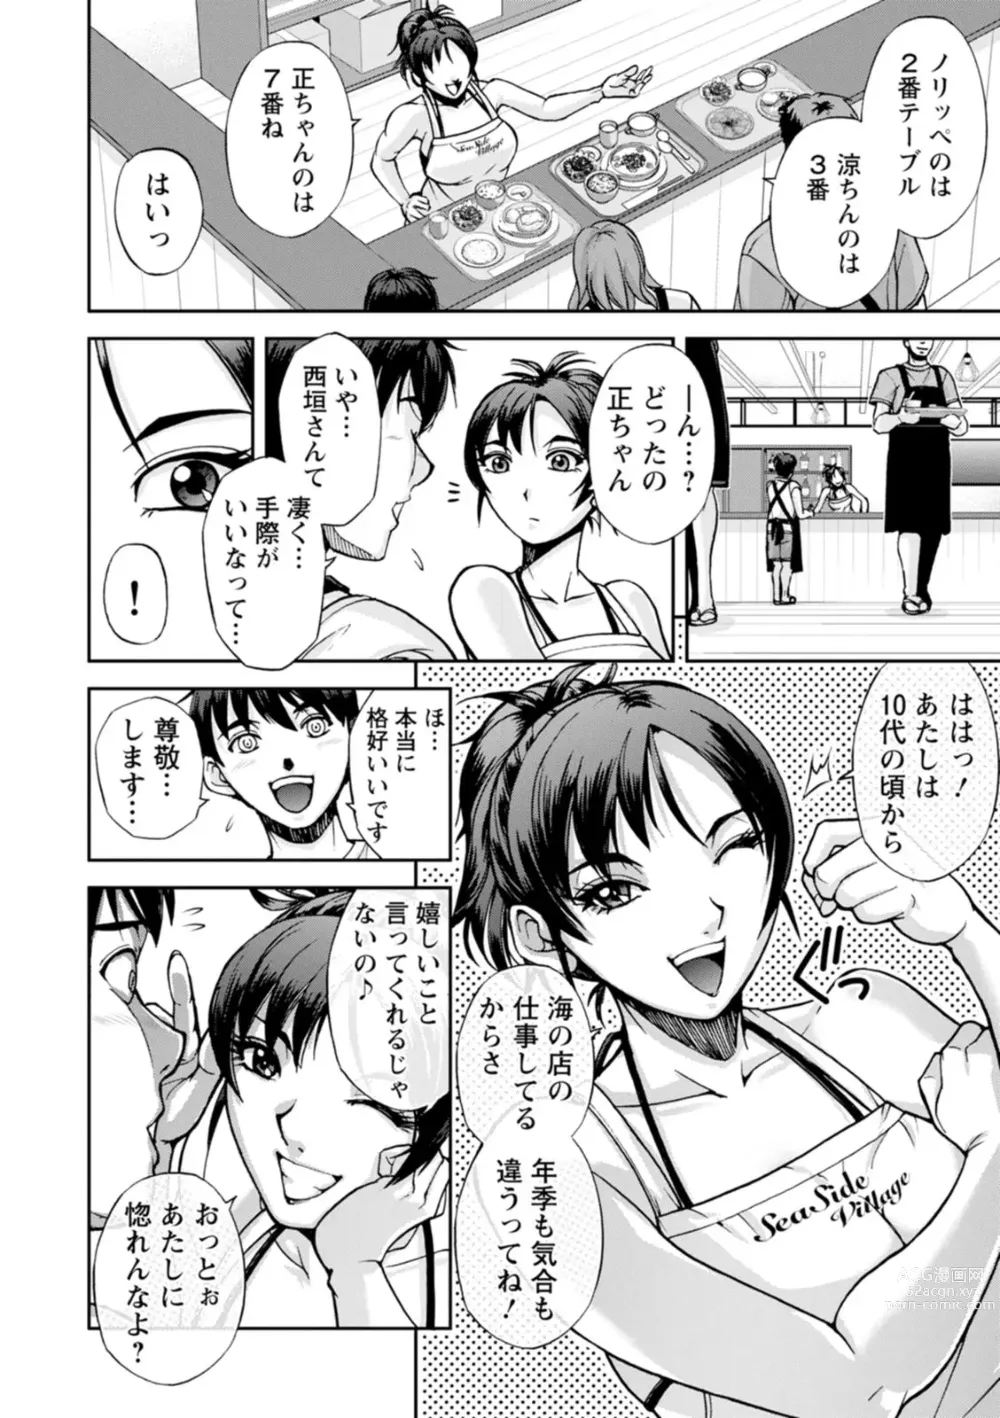 Page 4 of doujinshi Nishigaki-san is stylish and inane